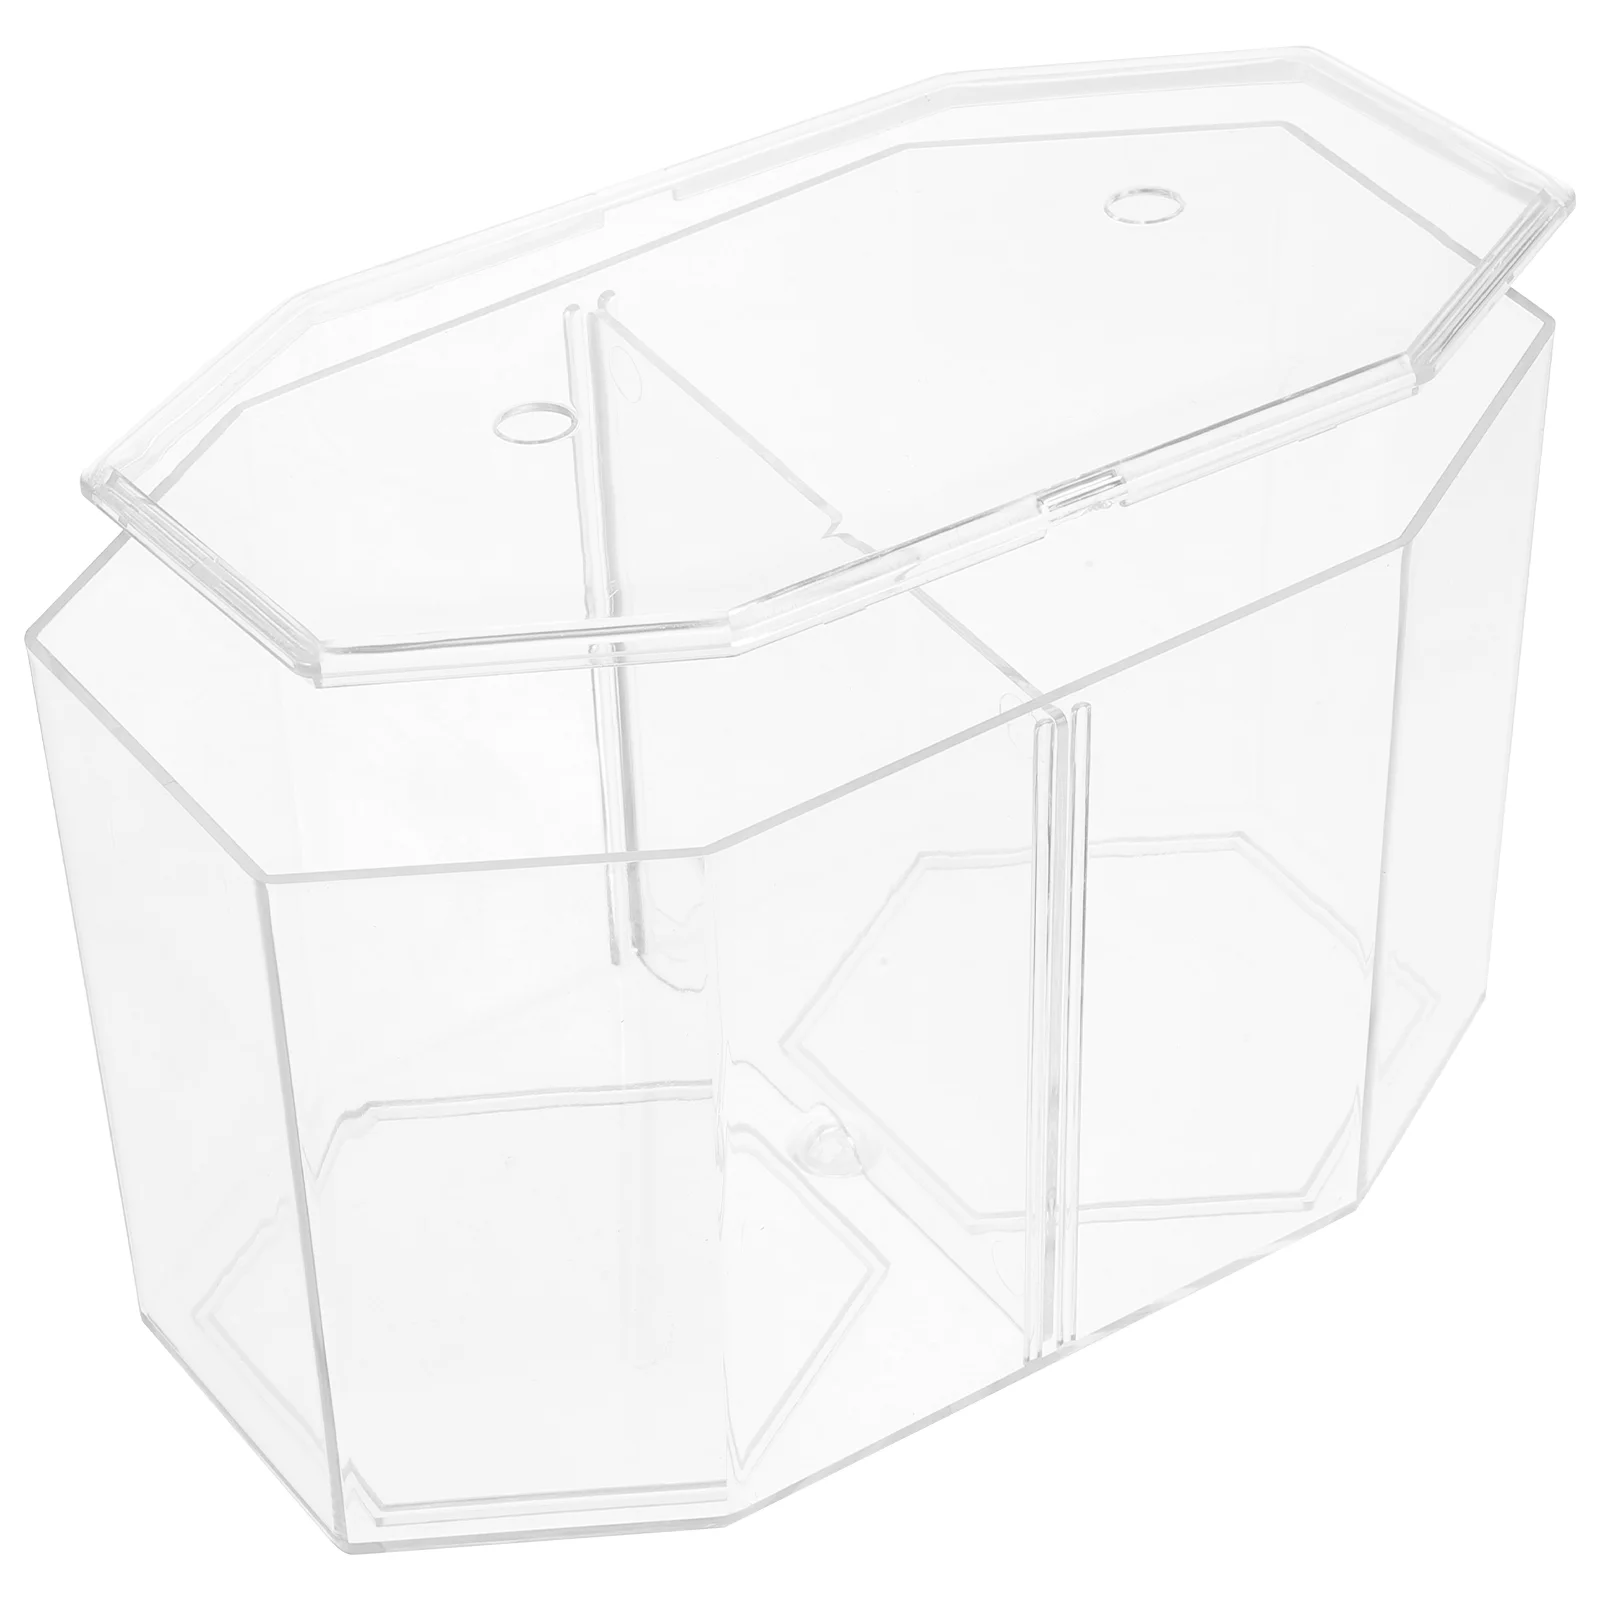 Восьмиугольный контейнер для разведения креветок Бетта, аквариум с золотыми рыбками, акриловая перегородка, прозрачный аксессуар Изображение 5